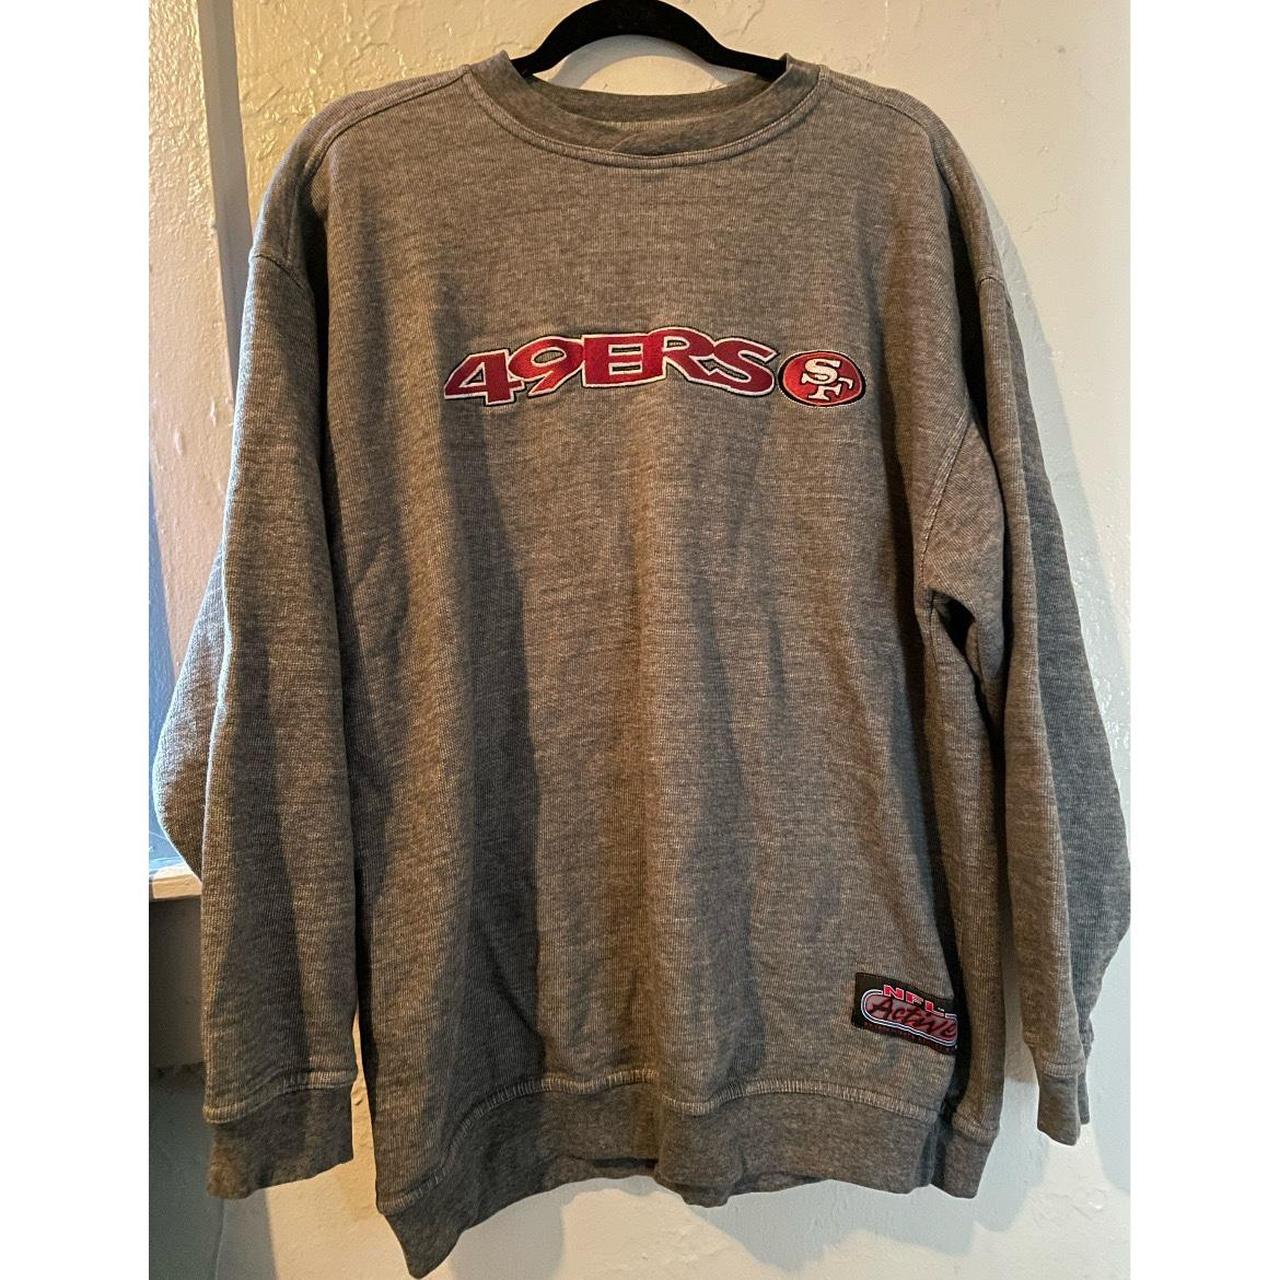 Vintage 1990's NFL San Fransisco 49ers Embroidered Crewneck Sweatshirt